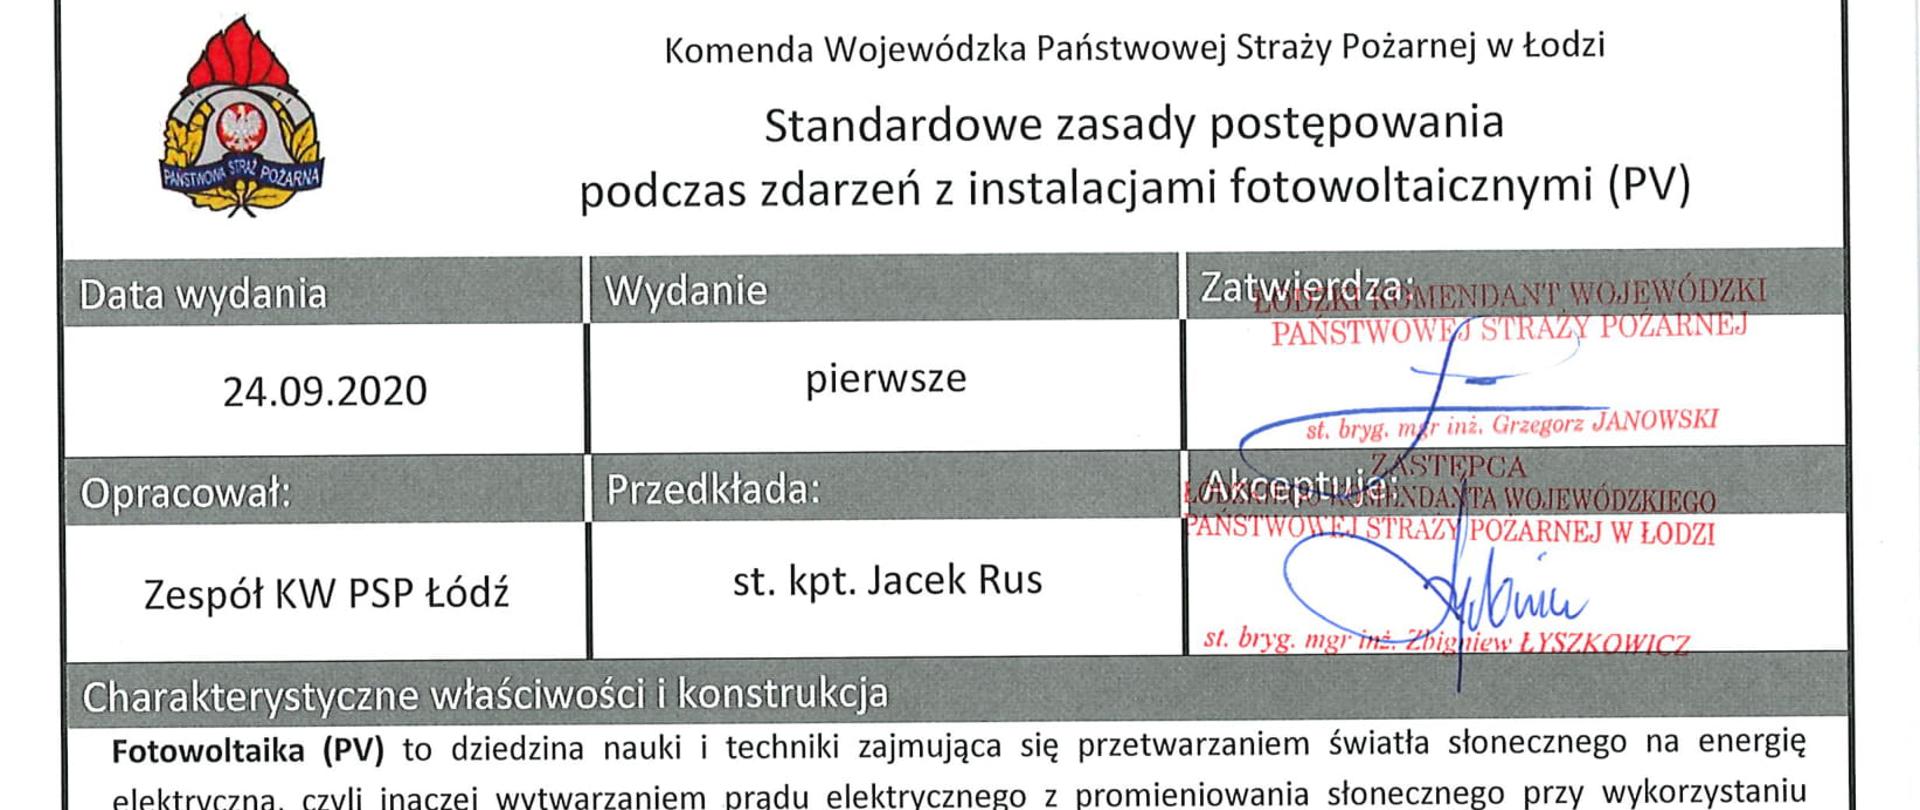 Pierwsza strona standardowych zasad postępowania podczas zdarzeń z instalacjami fotowoltaicznymi. Dokument opracowany przez KW PSP w Łodzi z podpisami zespołu tworzącego z KW.